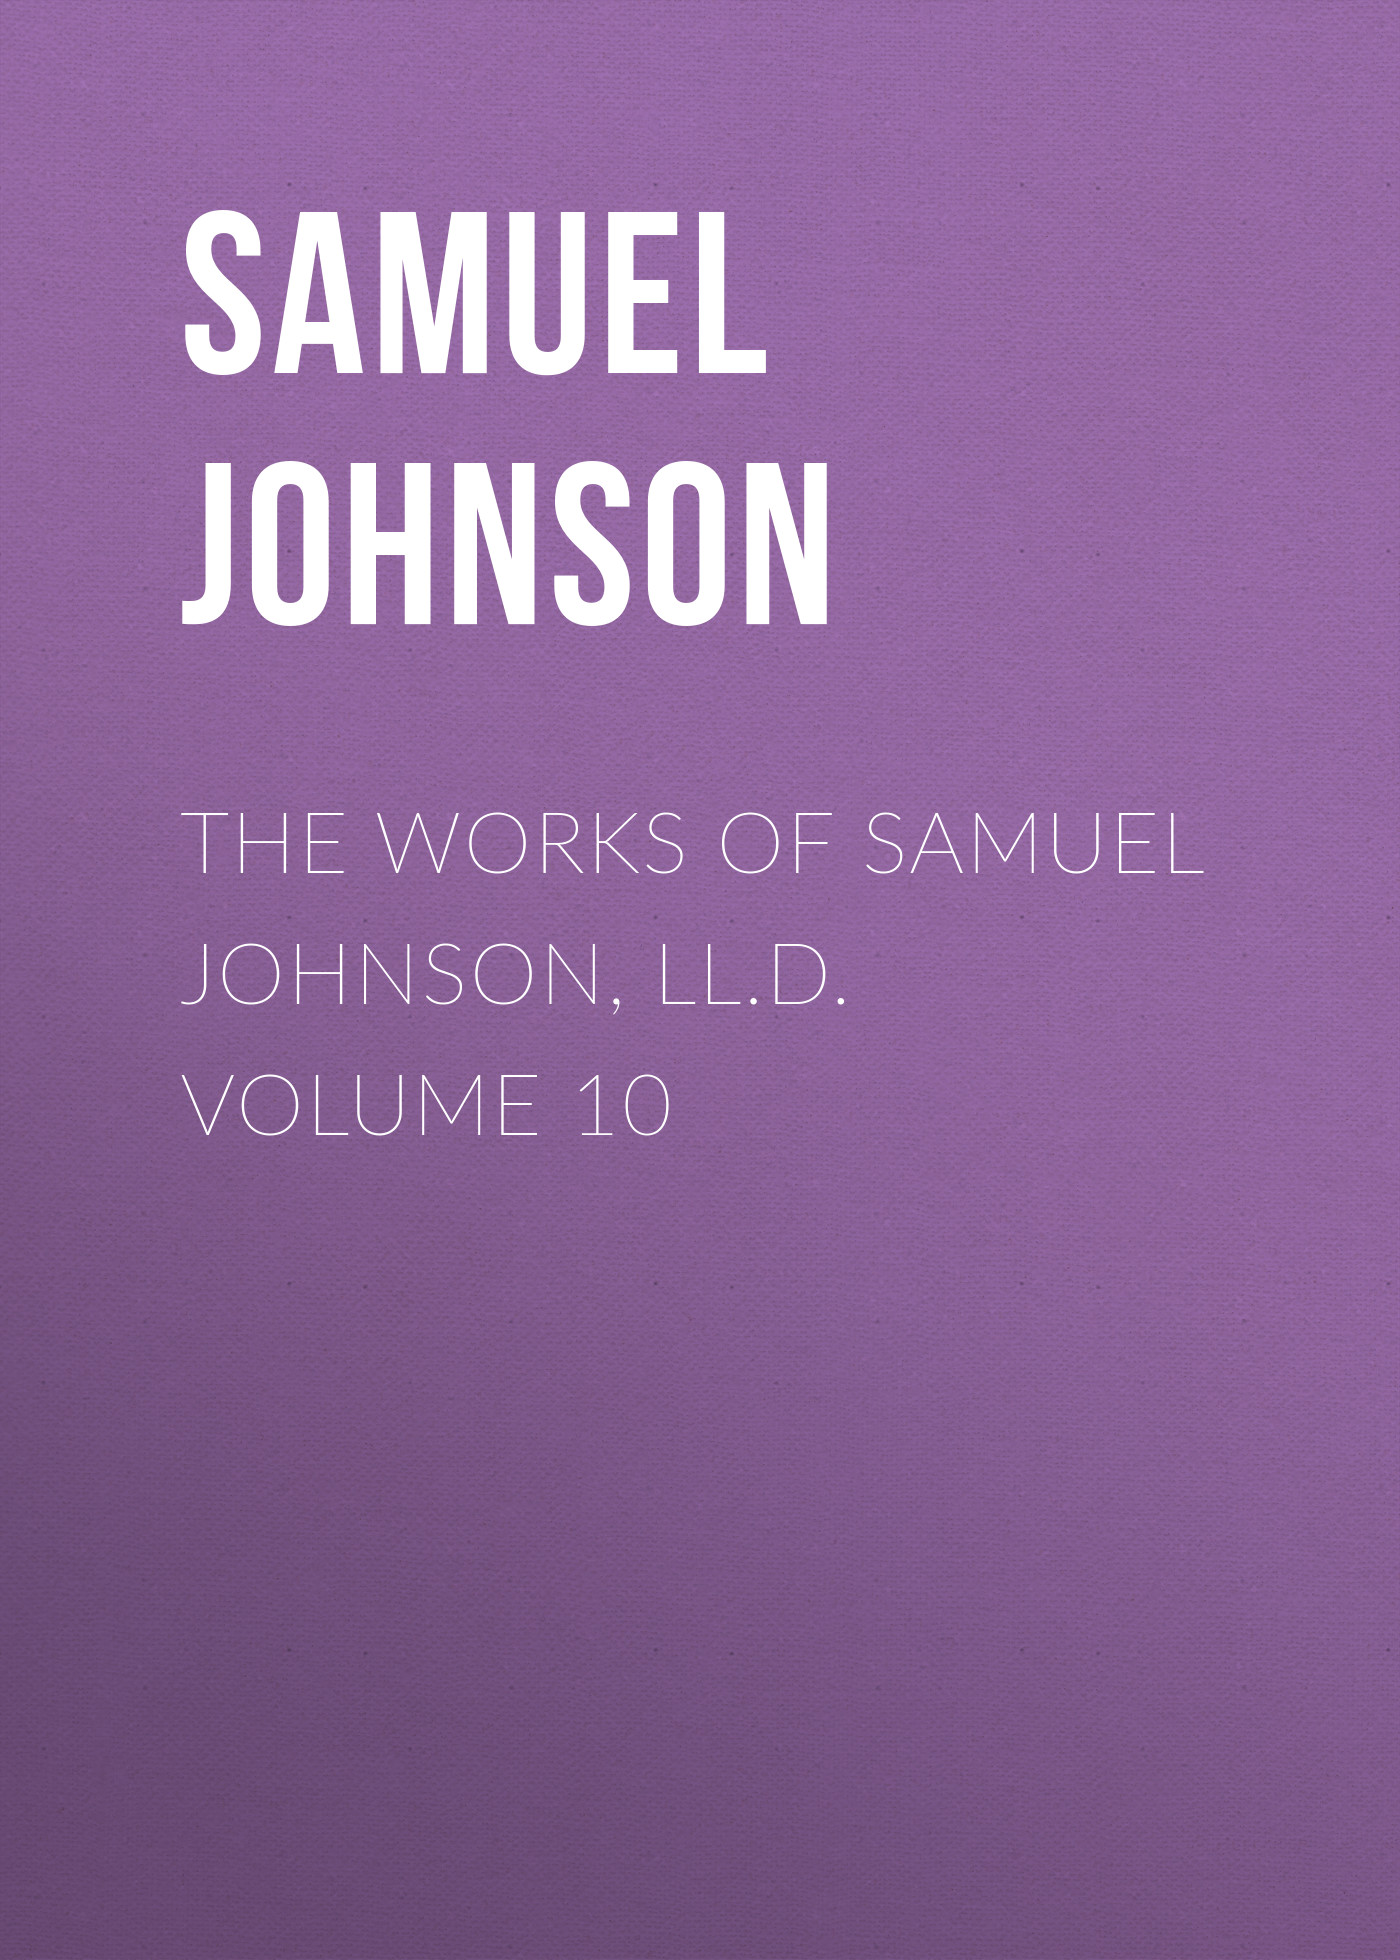 Книга The Works of Samuel Johnson, LL.D. Volume 10 из серии , созданная Samuel Johnson, может относится к жанру Зарубежная классика, Литература 18 века, Зарубежная старинная литература. Стоимость электронной книги The Works of Samuel Johnson, LL.D. Volume 10 с идентификатором 36092549 составляет 0 руб.